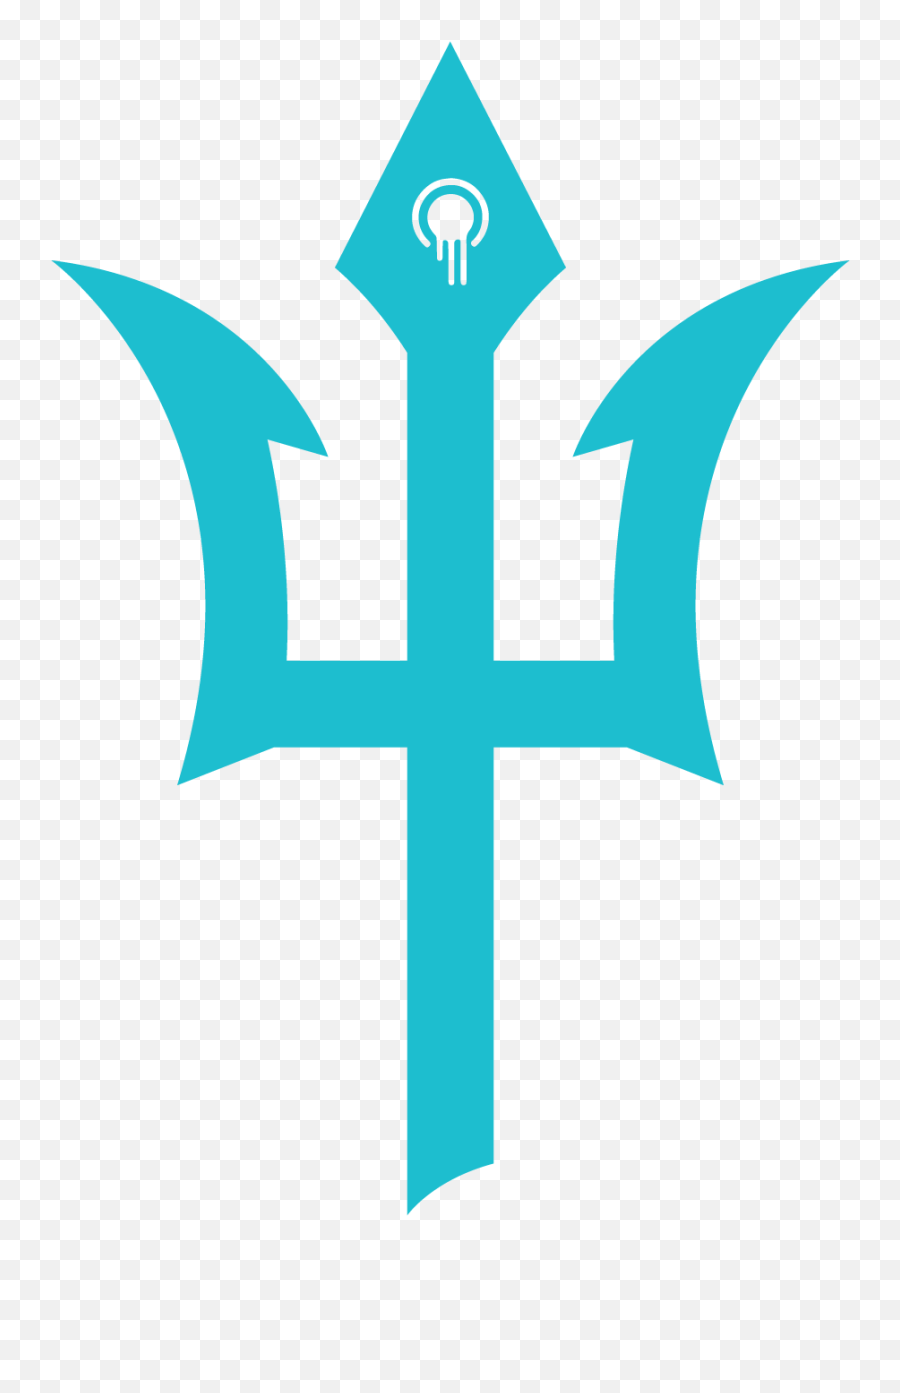 Poseidon Emoji,Poseidon Logo